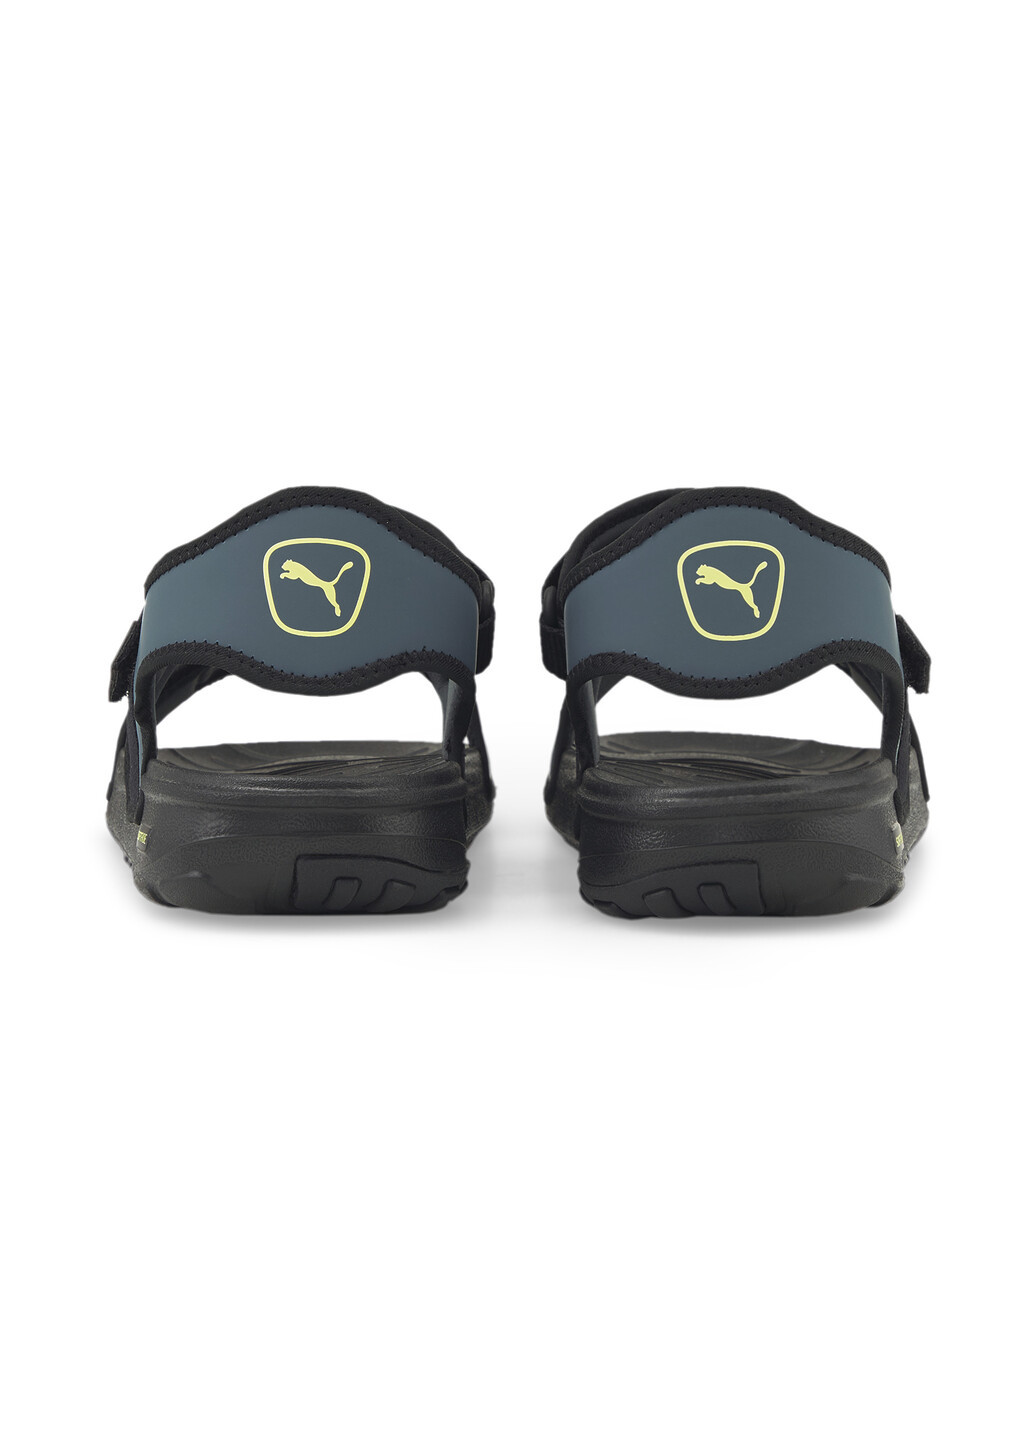 Сандалии SOFTRIDE Sandals Puma однотонные чёрные спортивные